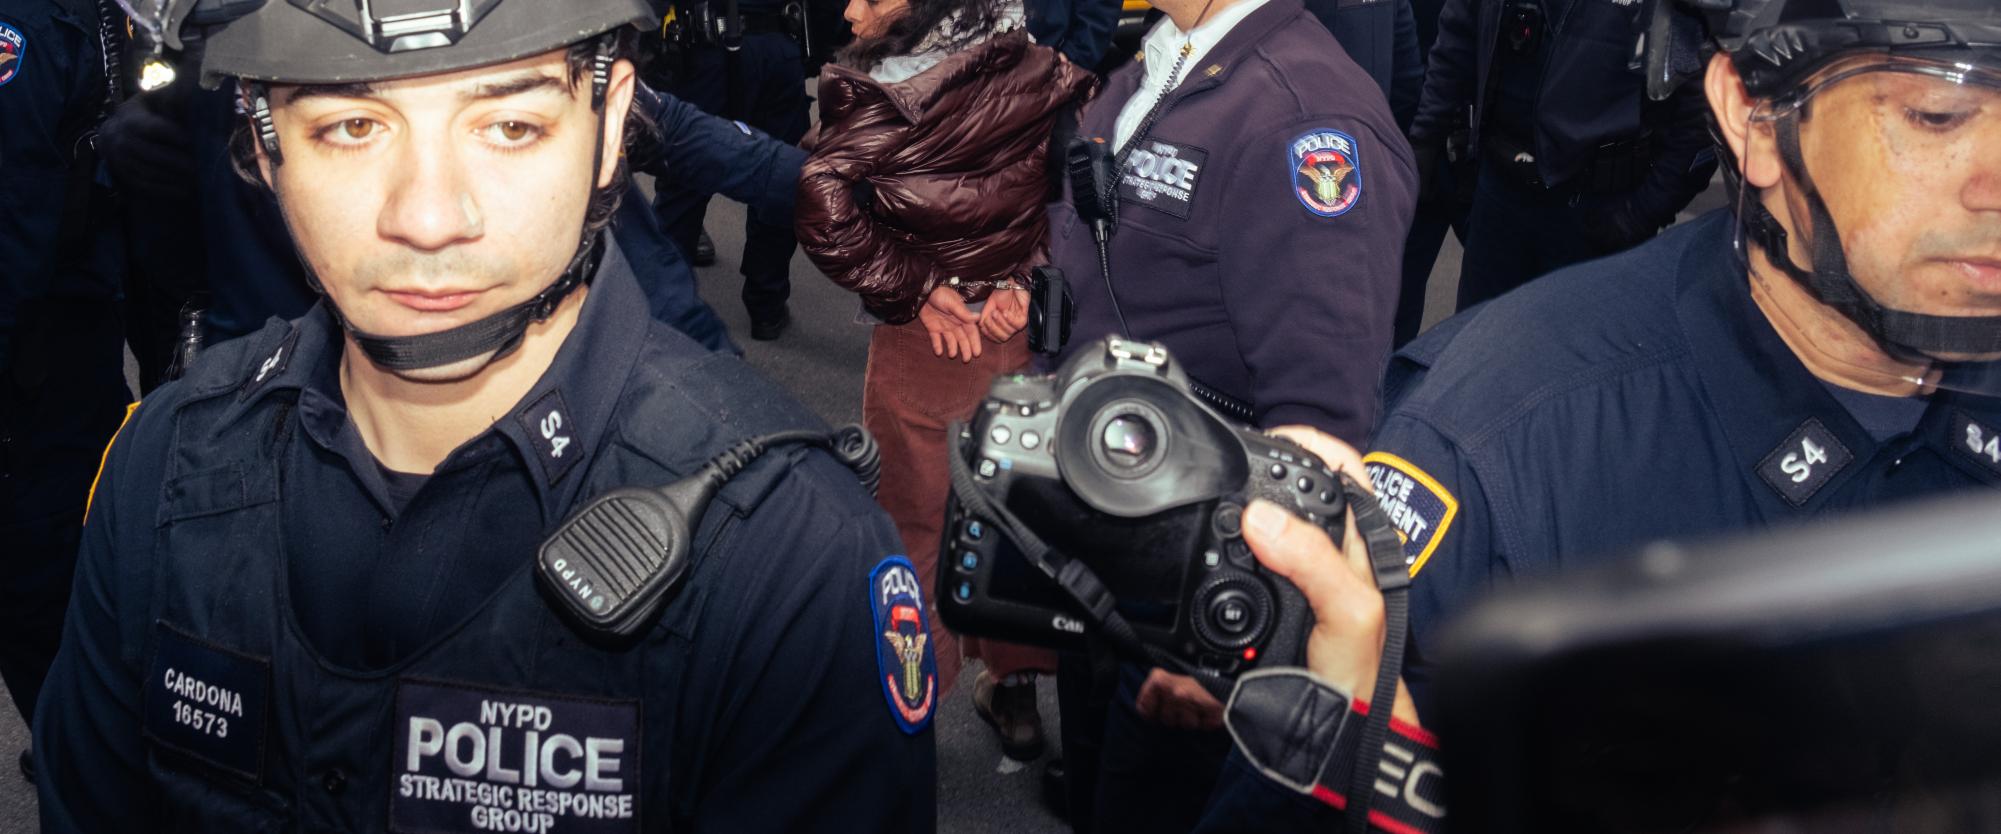 Police handcuff a protester.